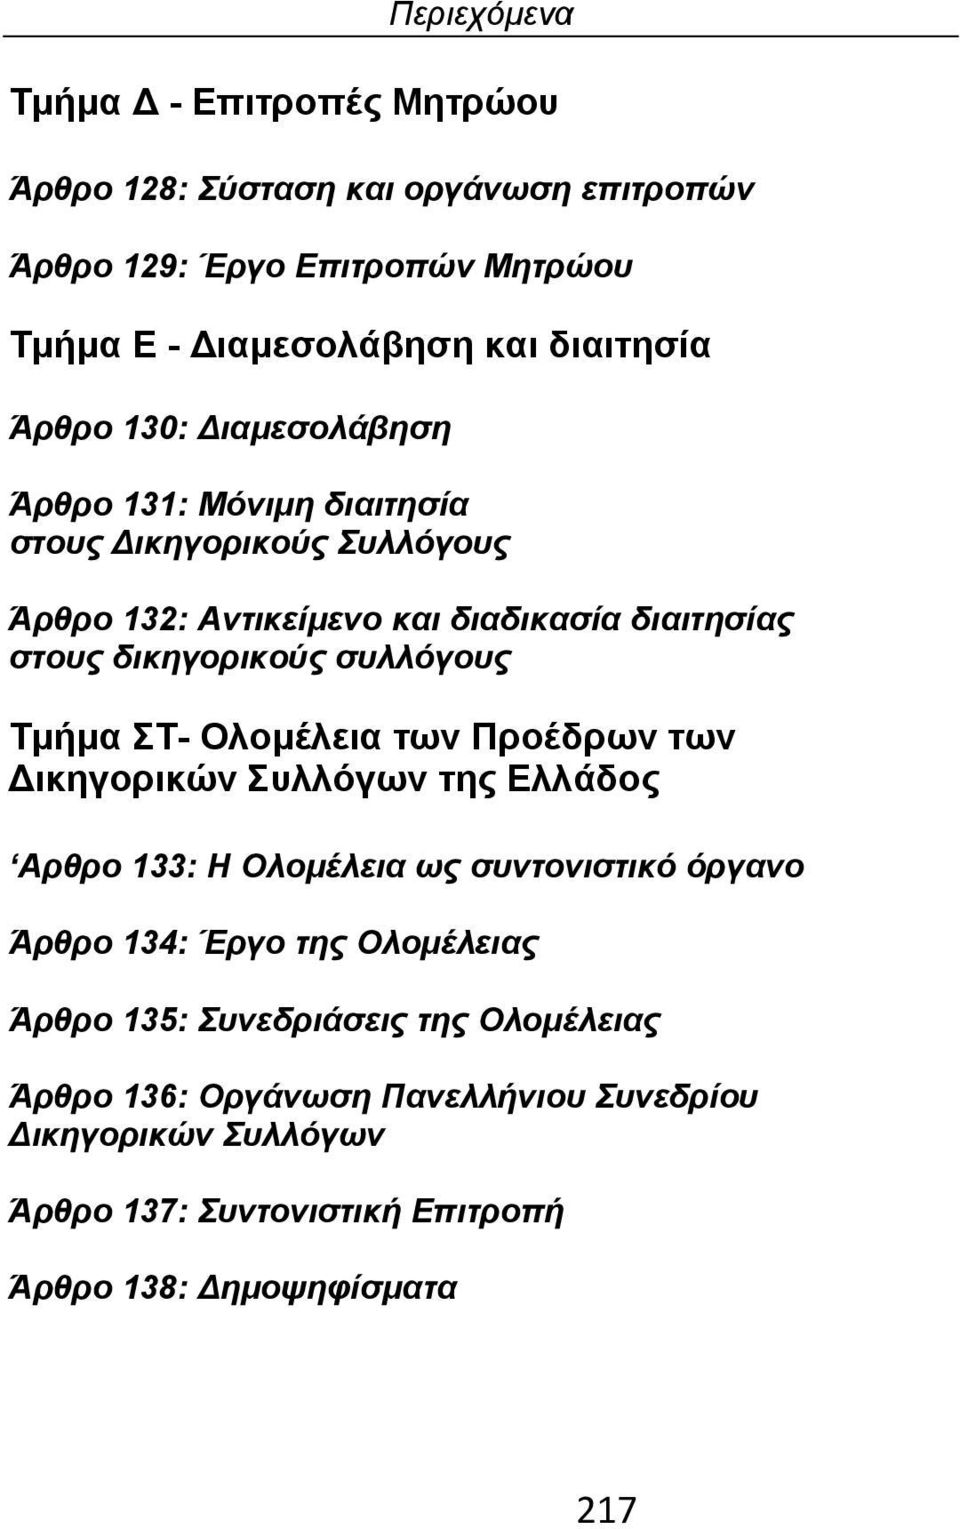 Τμήμα ΣΤ- Ολομέλεια των Προέδρων των Δικηγορικών Συλλόγων της Ελλάδος Αρθρο 133: Η Ολομέλεια ως συντονιστικό όργανο Άρθρο 134: Έργο της Ολομέλειας Άρθρο